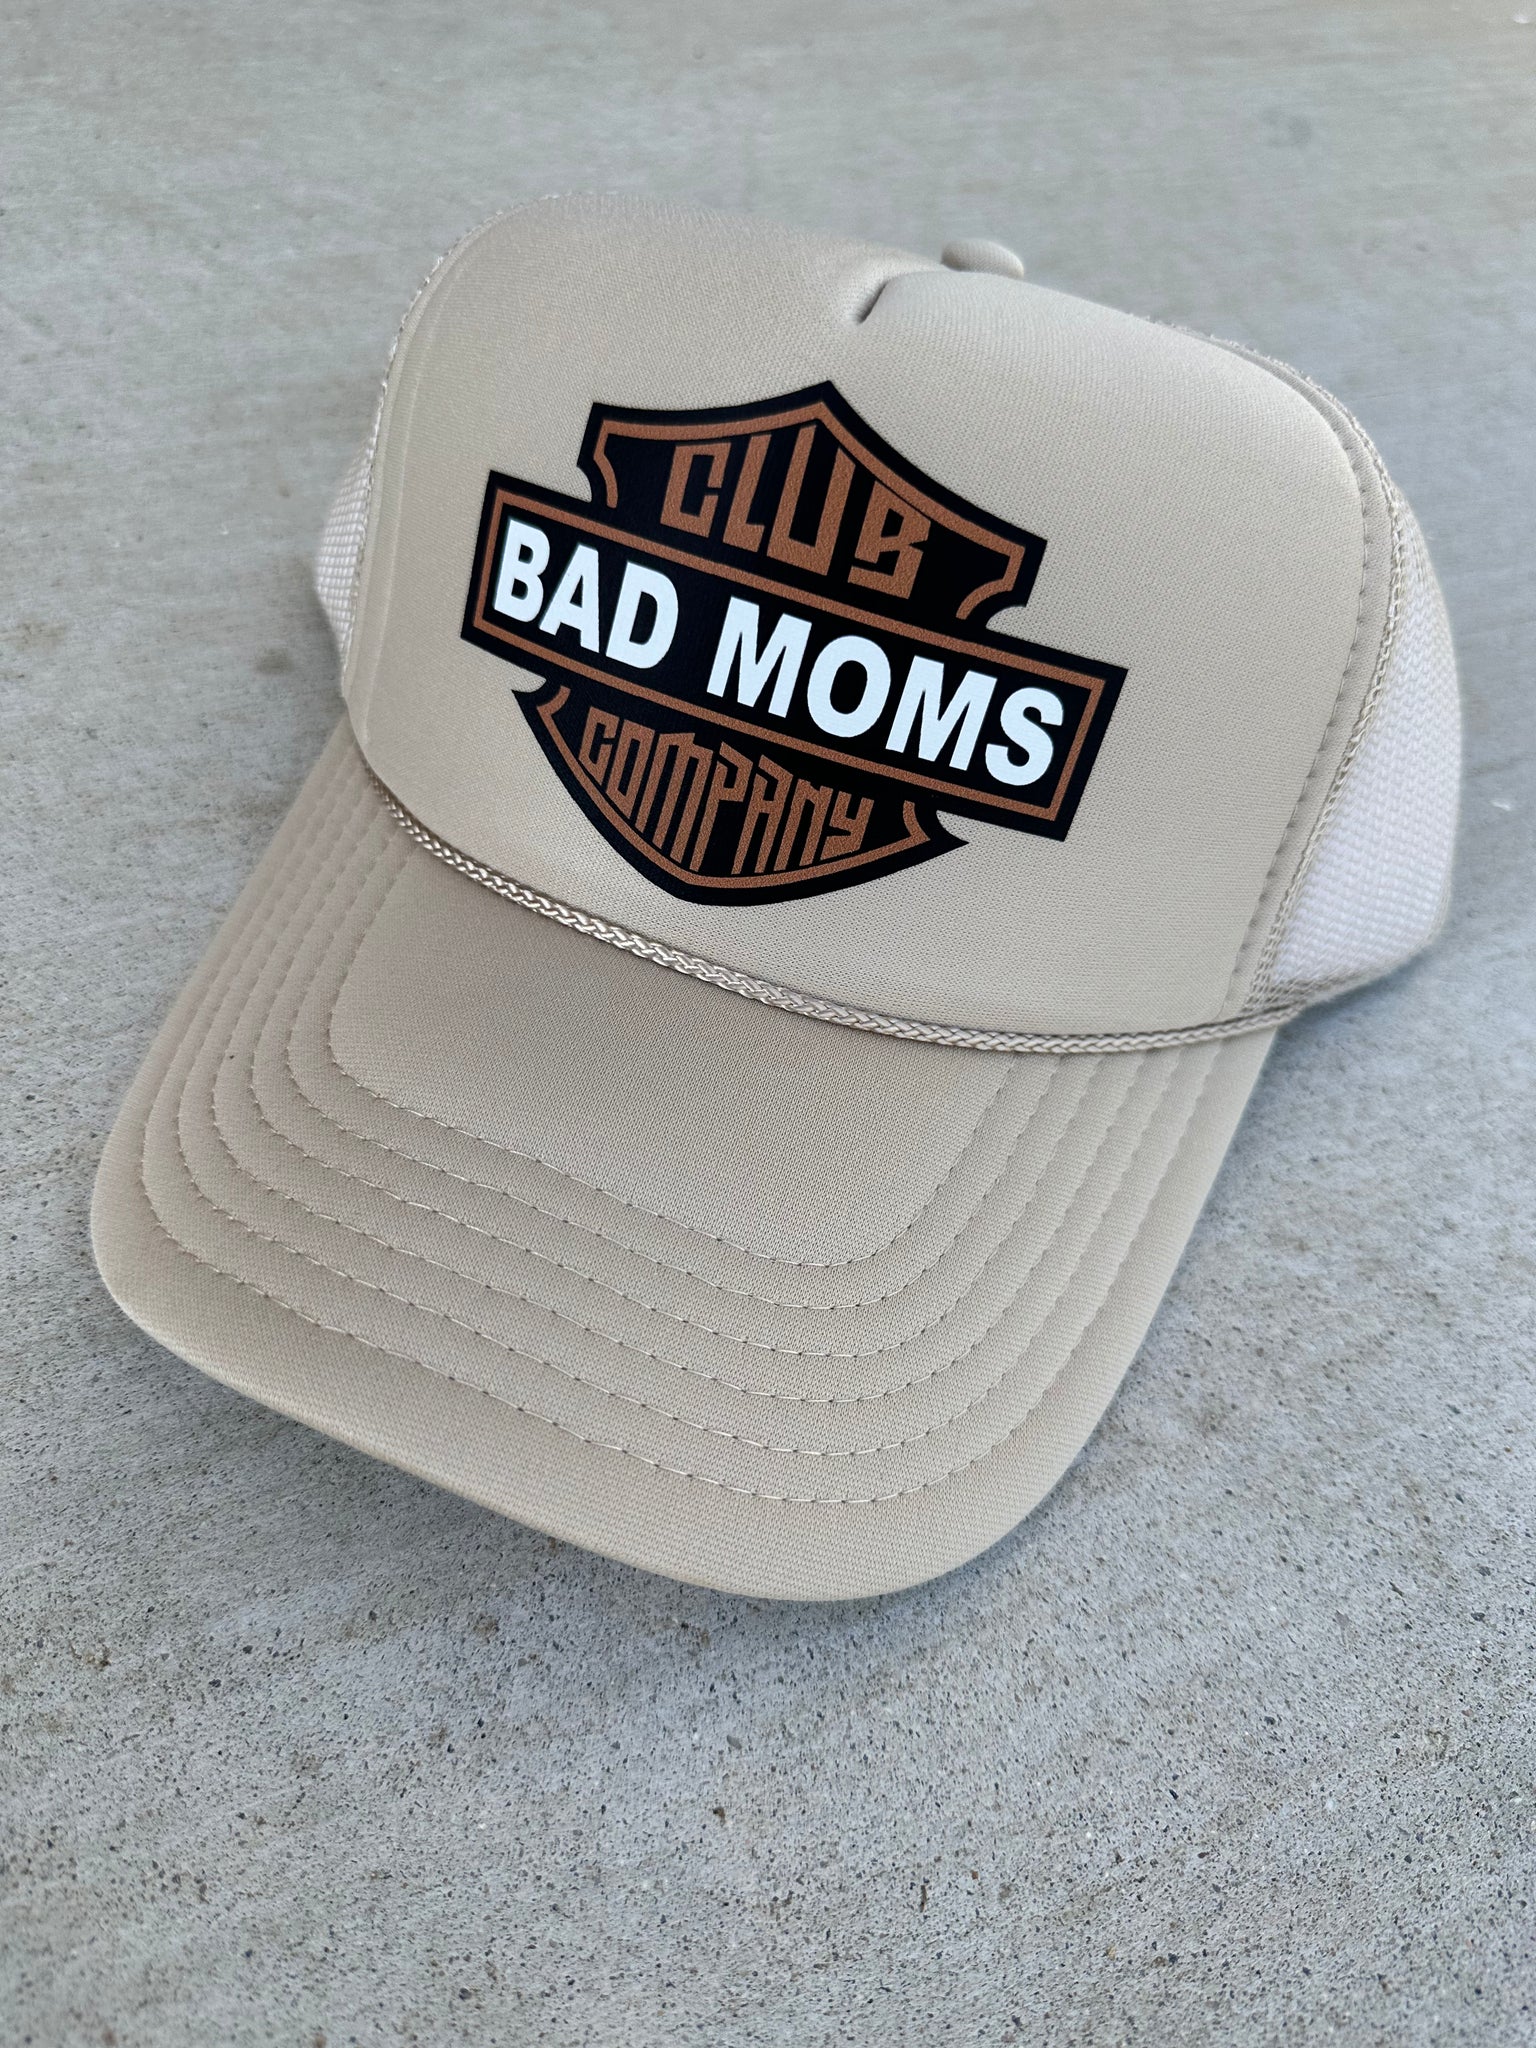 Bass Pro Kids Club Trucker Hat – Bad Moms Club Co.